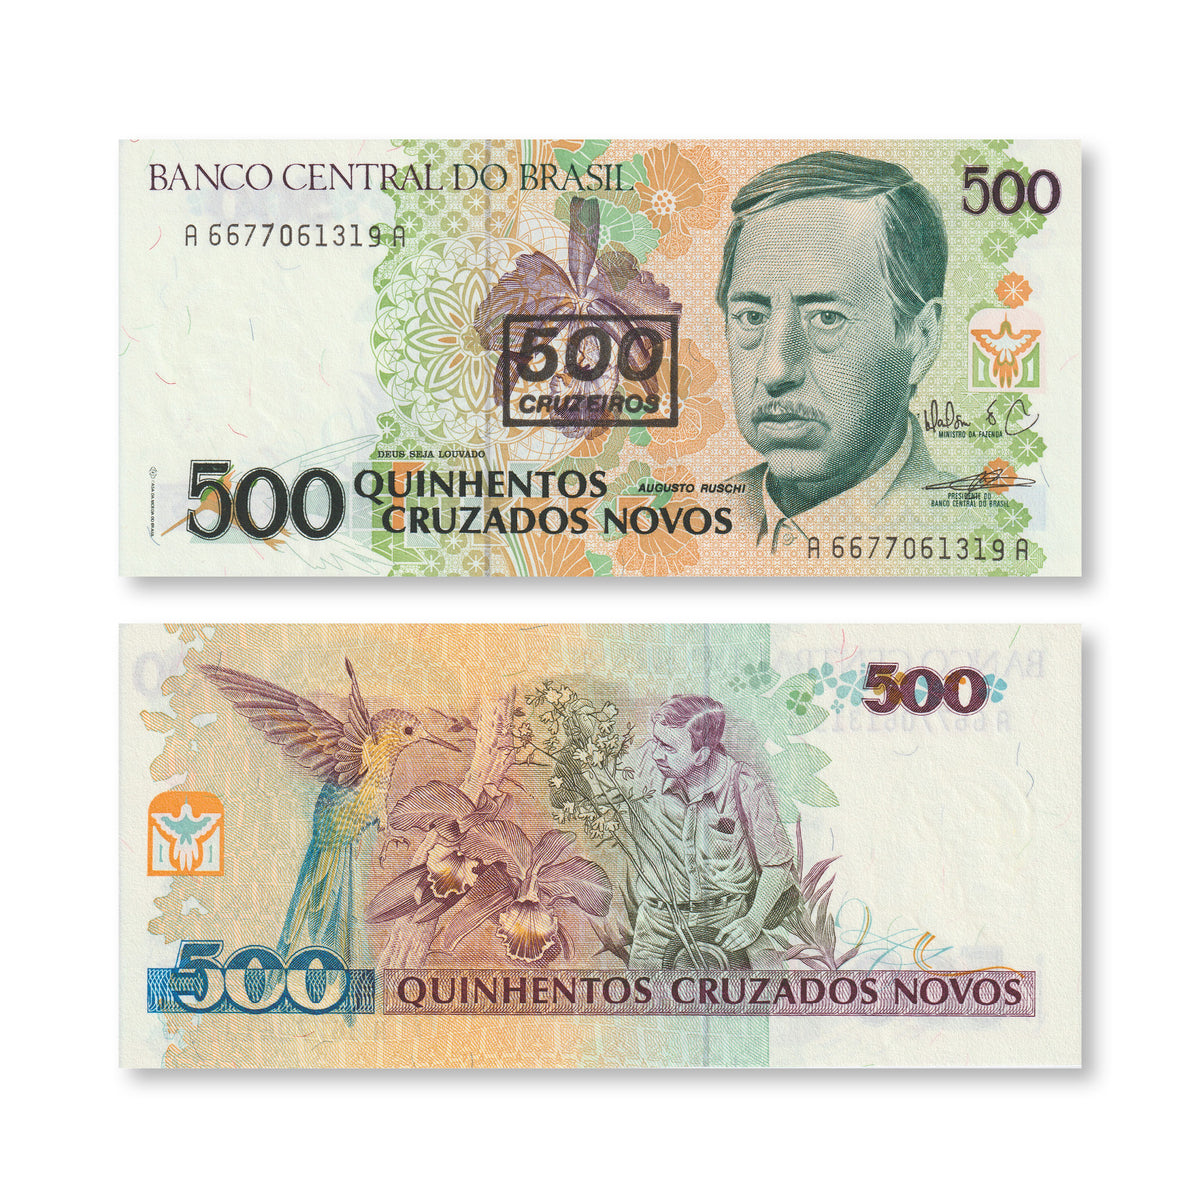 Brazil 500 Cruzeiros, 1990, B848a, P226b, UNC - Robert's World Money - World Banknotes